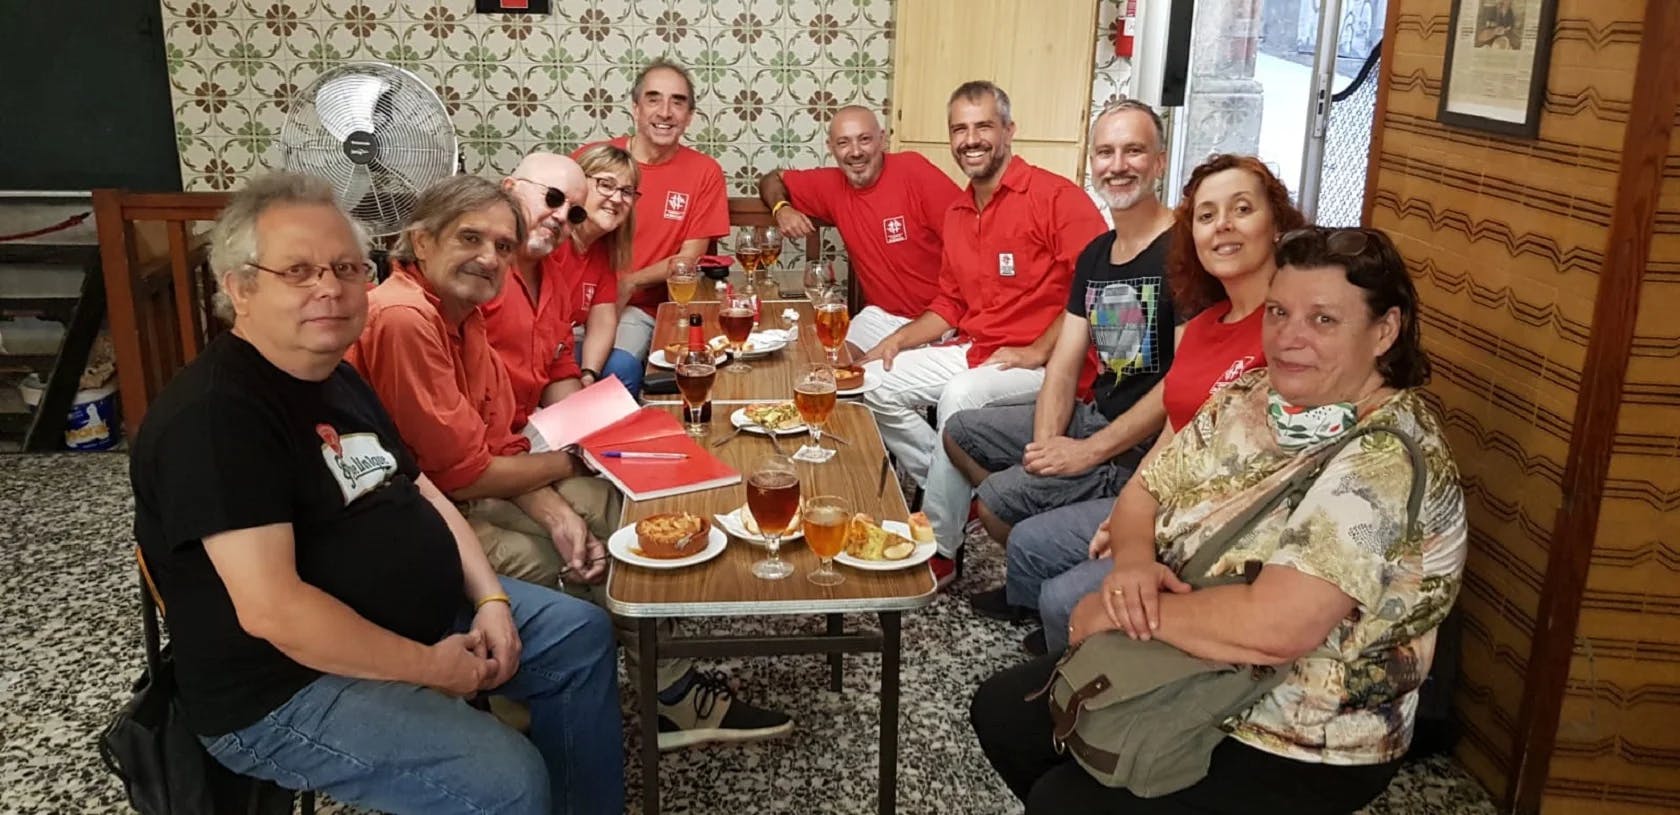 Un grup de Castellers de Barcelona esmorzant al bar Brusi la Mercè de 2020